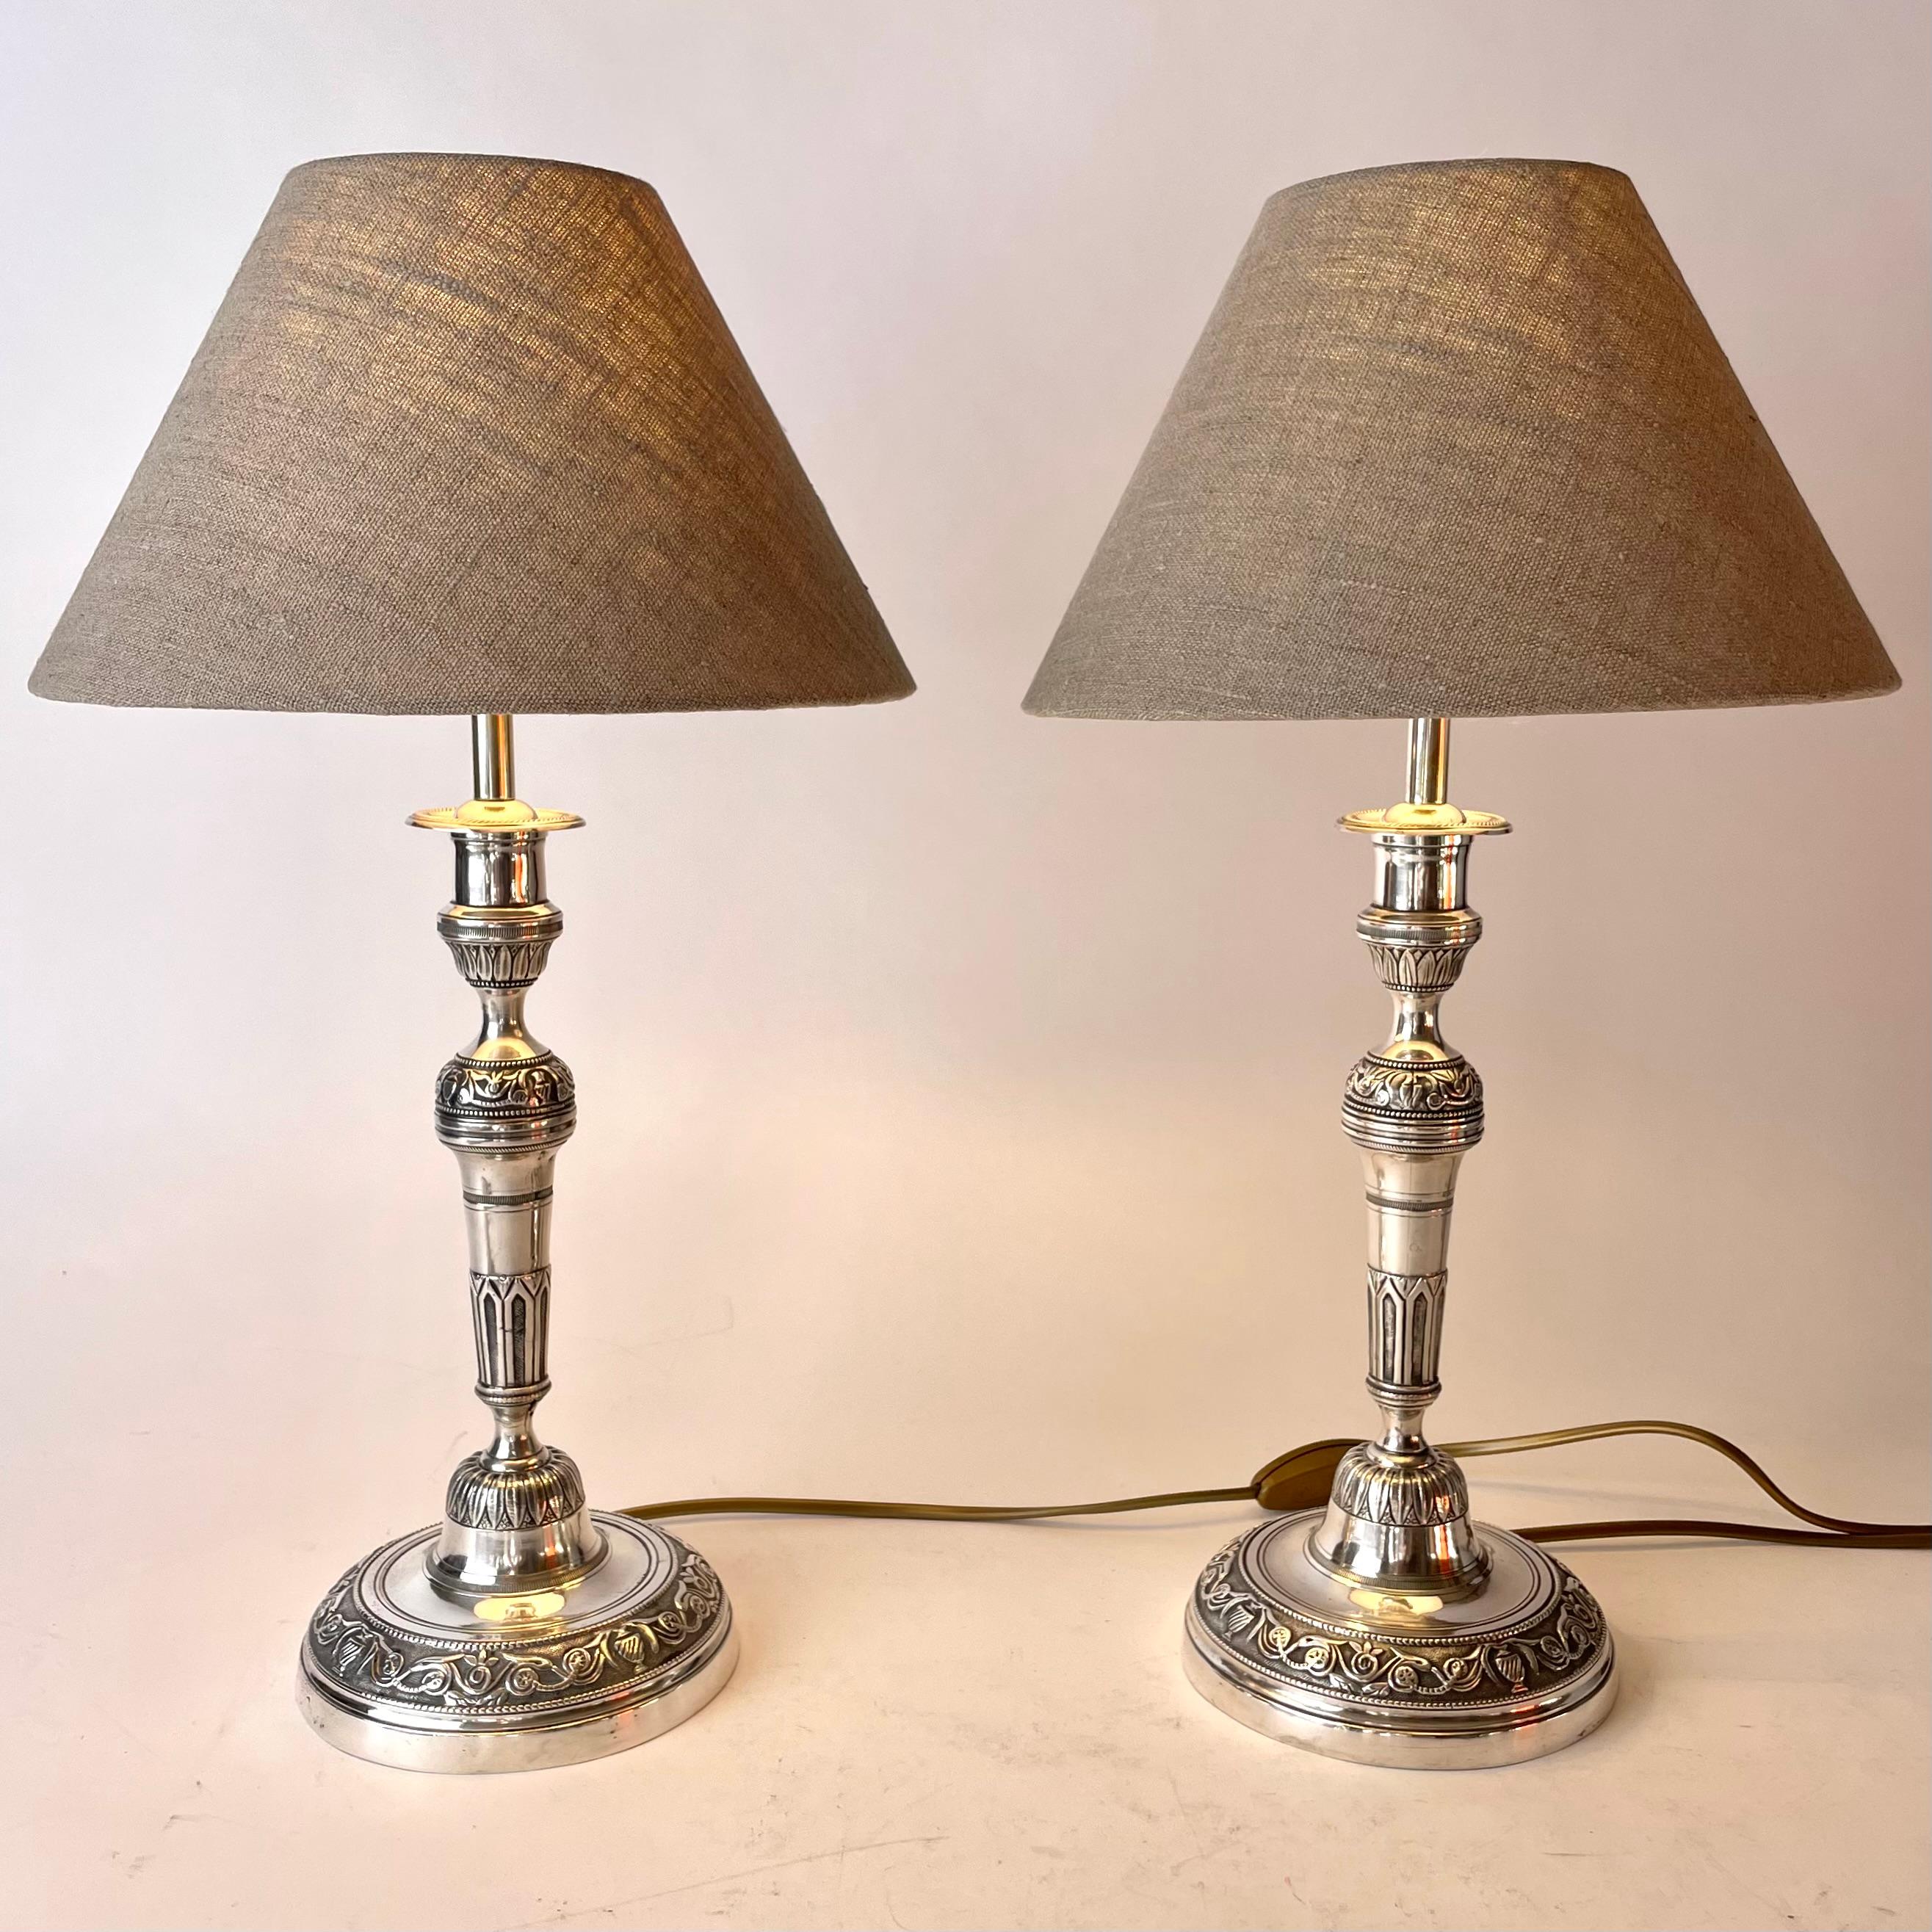 Elegante paire de lampes de table Empire en bronze argenté. Il s'agissait à l'origine d'une paire de chandeliers Empire des années 1820, transformés en lampes de table au début du 20e siècle.

Électricité refaite à neuf 

Nouveaux abat-jour en